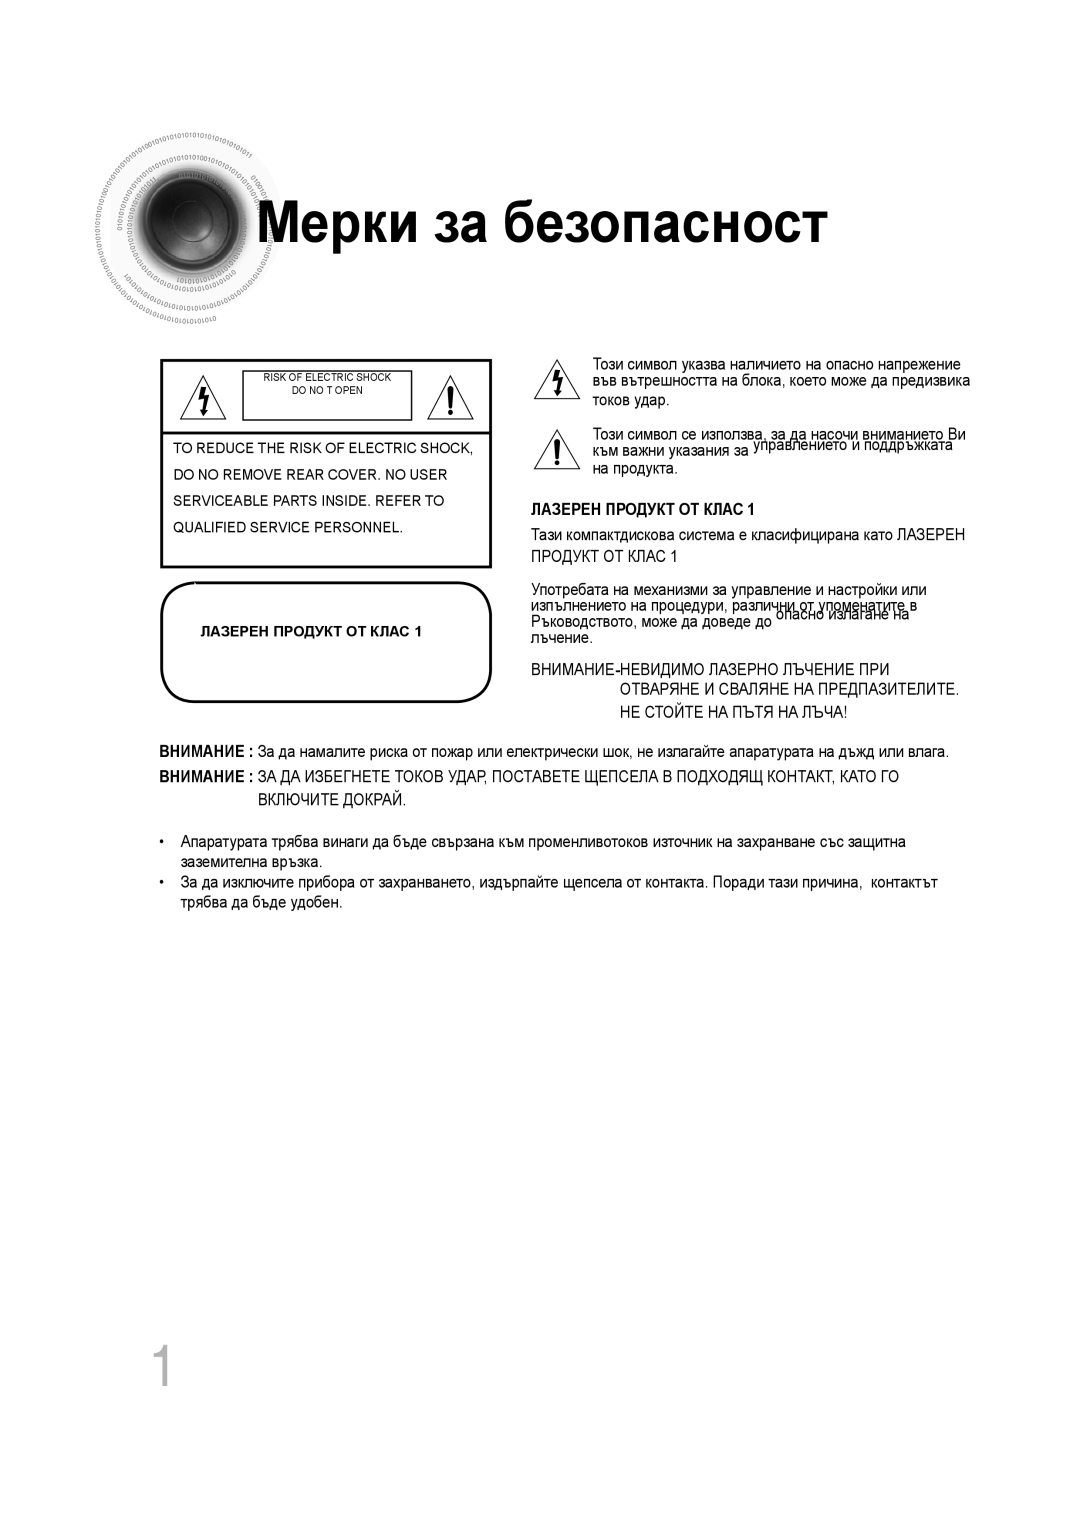 Samsung MM-C330D/EDC manual Мерки за безопасност, Лазерен Продукт От Клас 